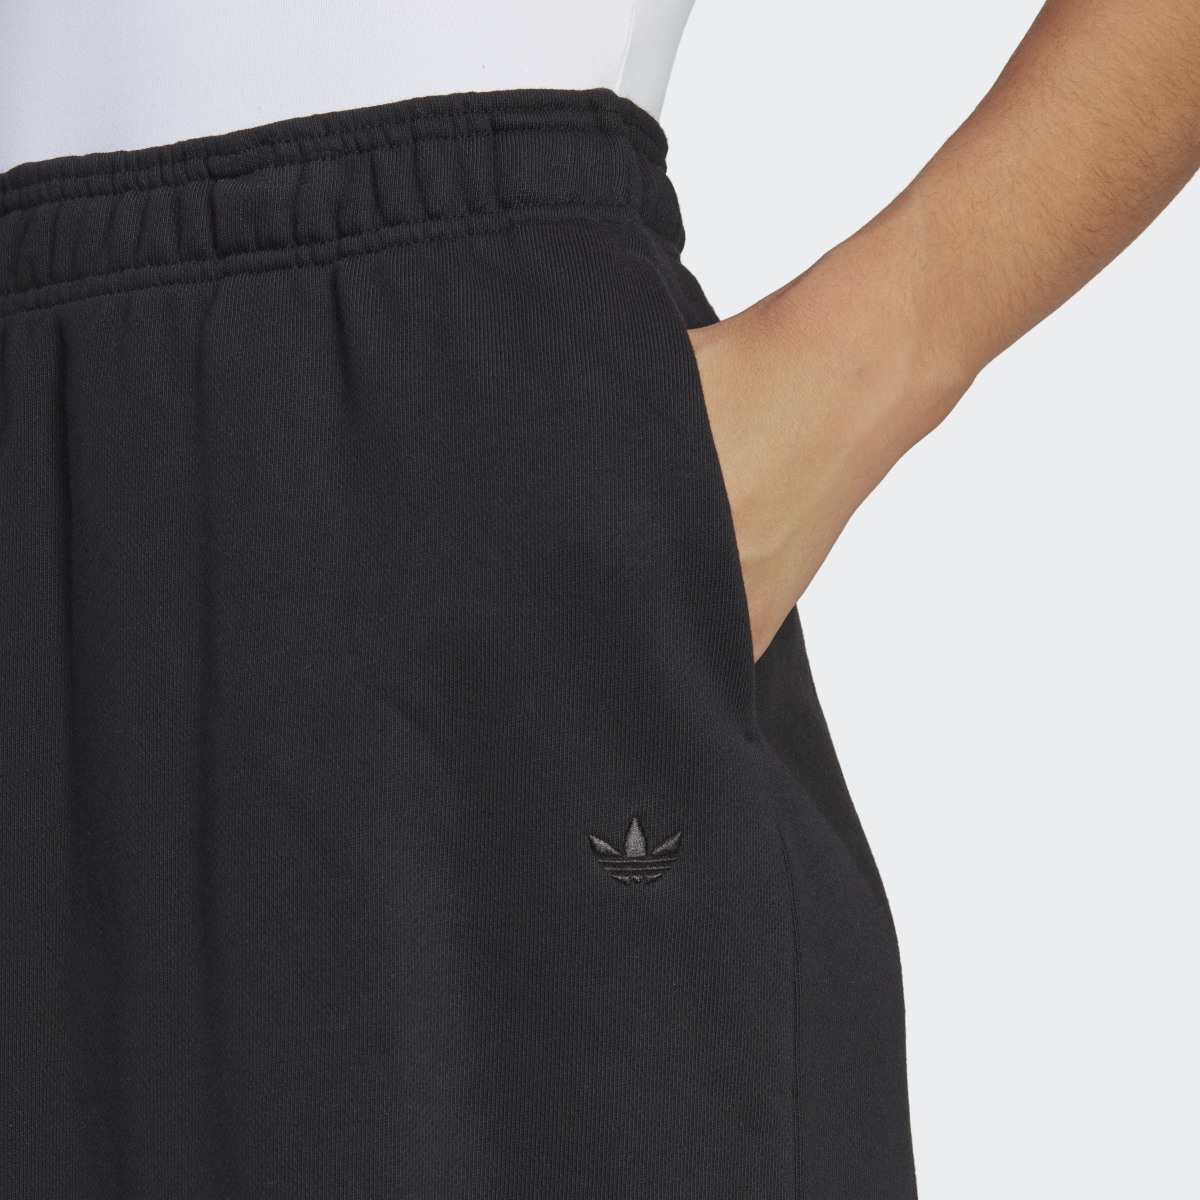 Adidas Premium Essentials Skirt. 5